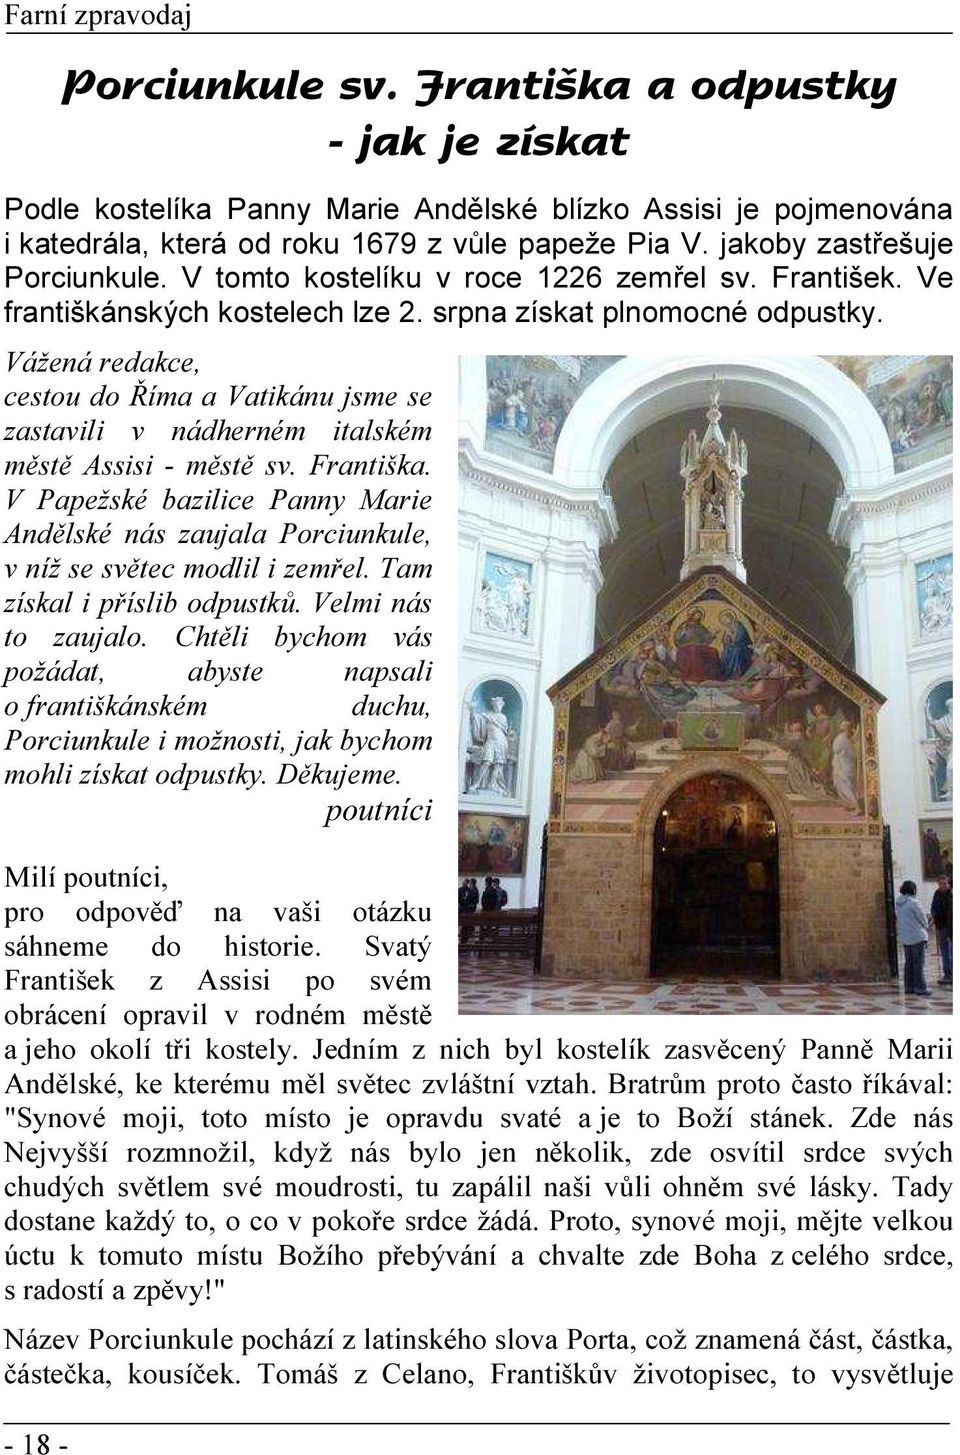 Vážená redakce, cestou do Říma a Vatikánu jsme se zastavili v nádherném italském městě Assisi - městě sv. Františka.